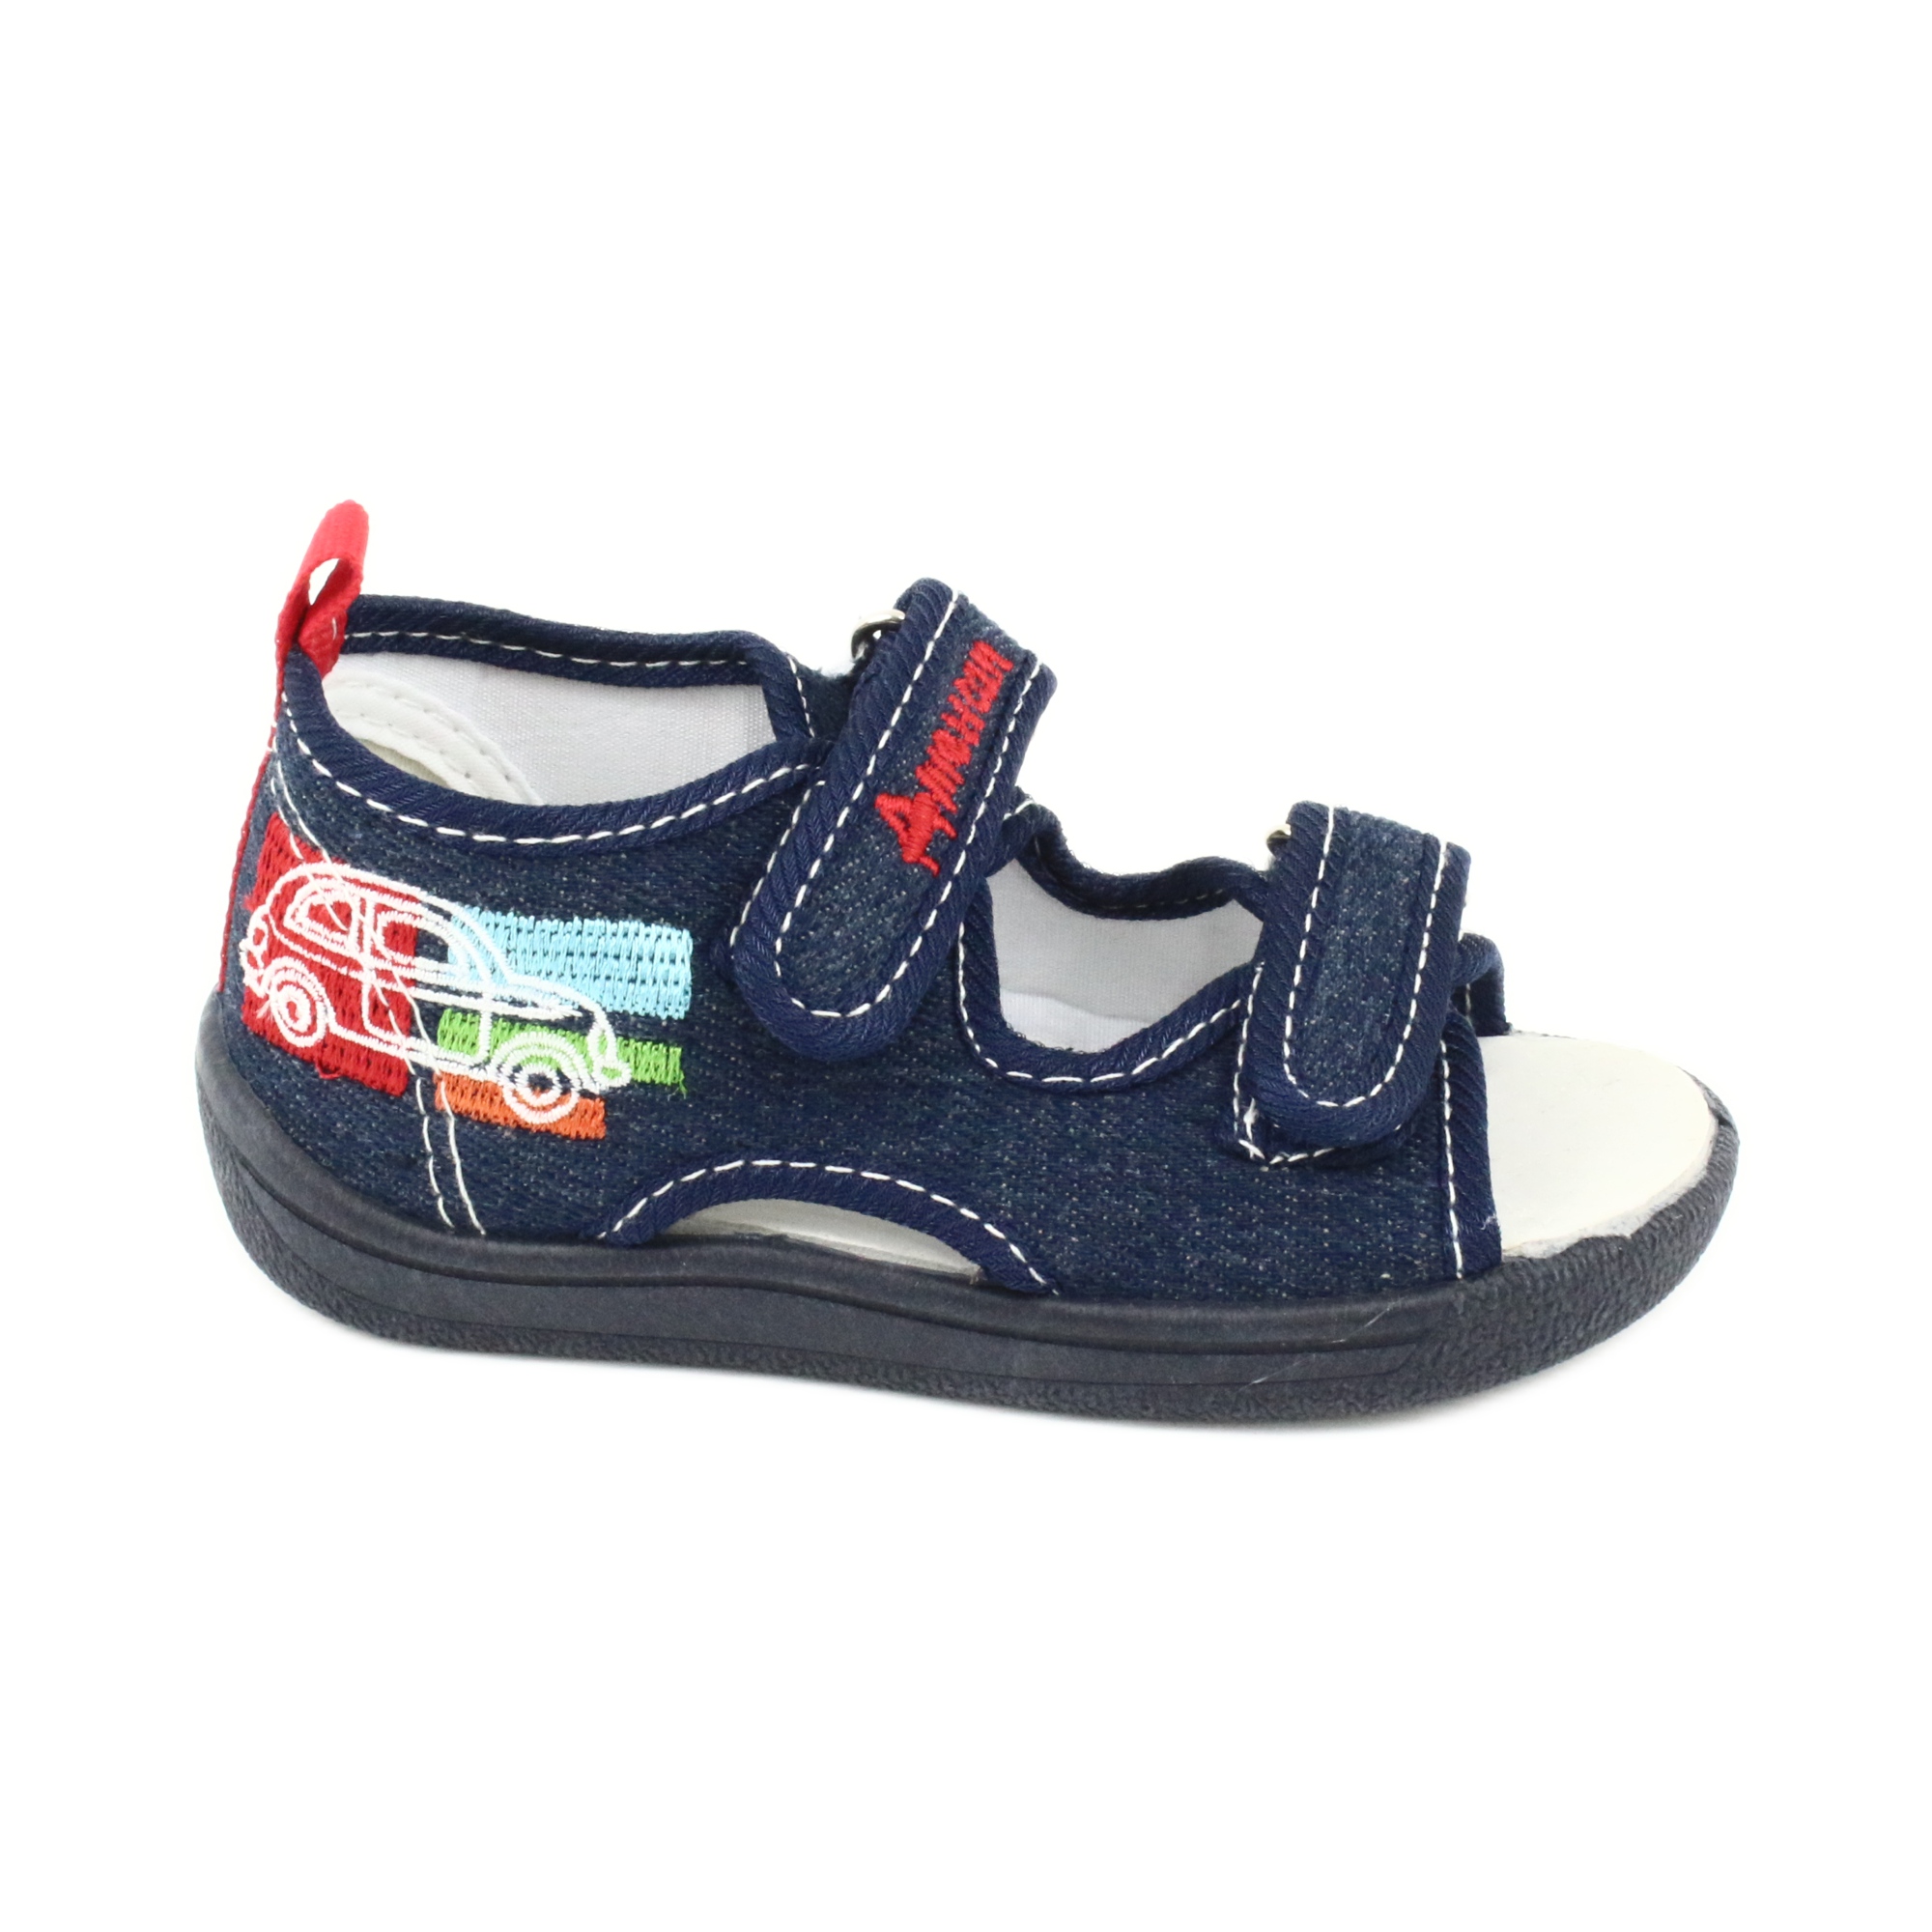 American Club American sandałki buty dziecięce wkładka skórzana TEN46 czerwone granatowe